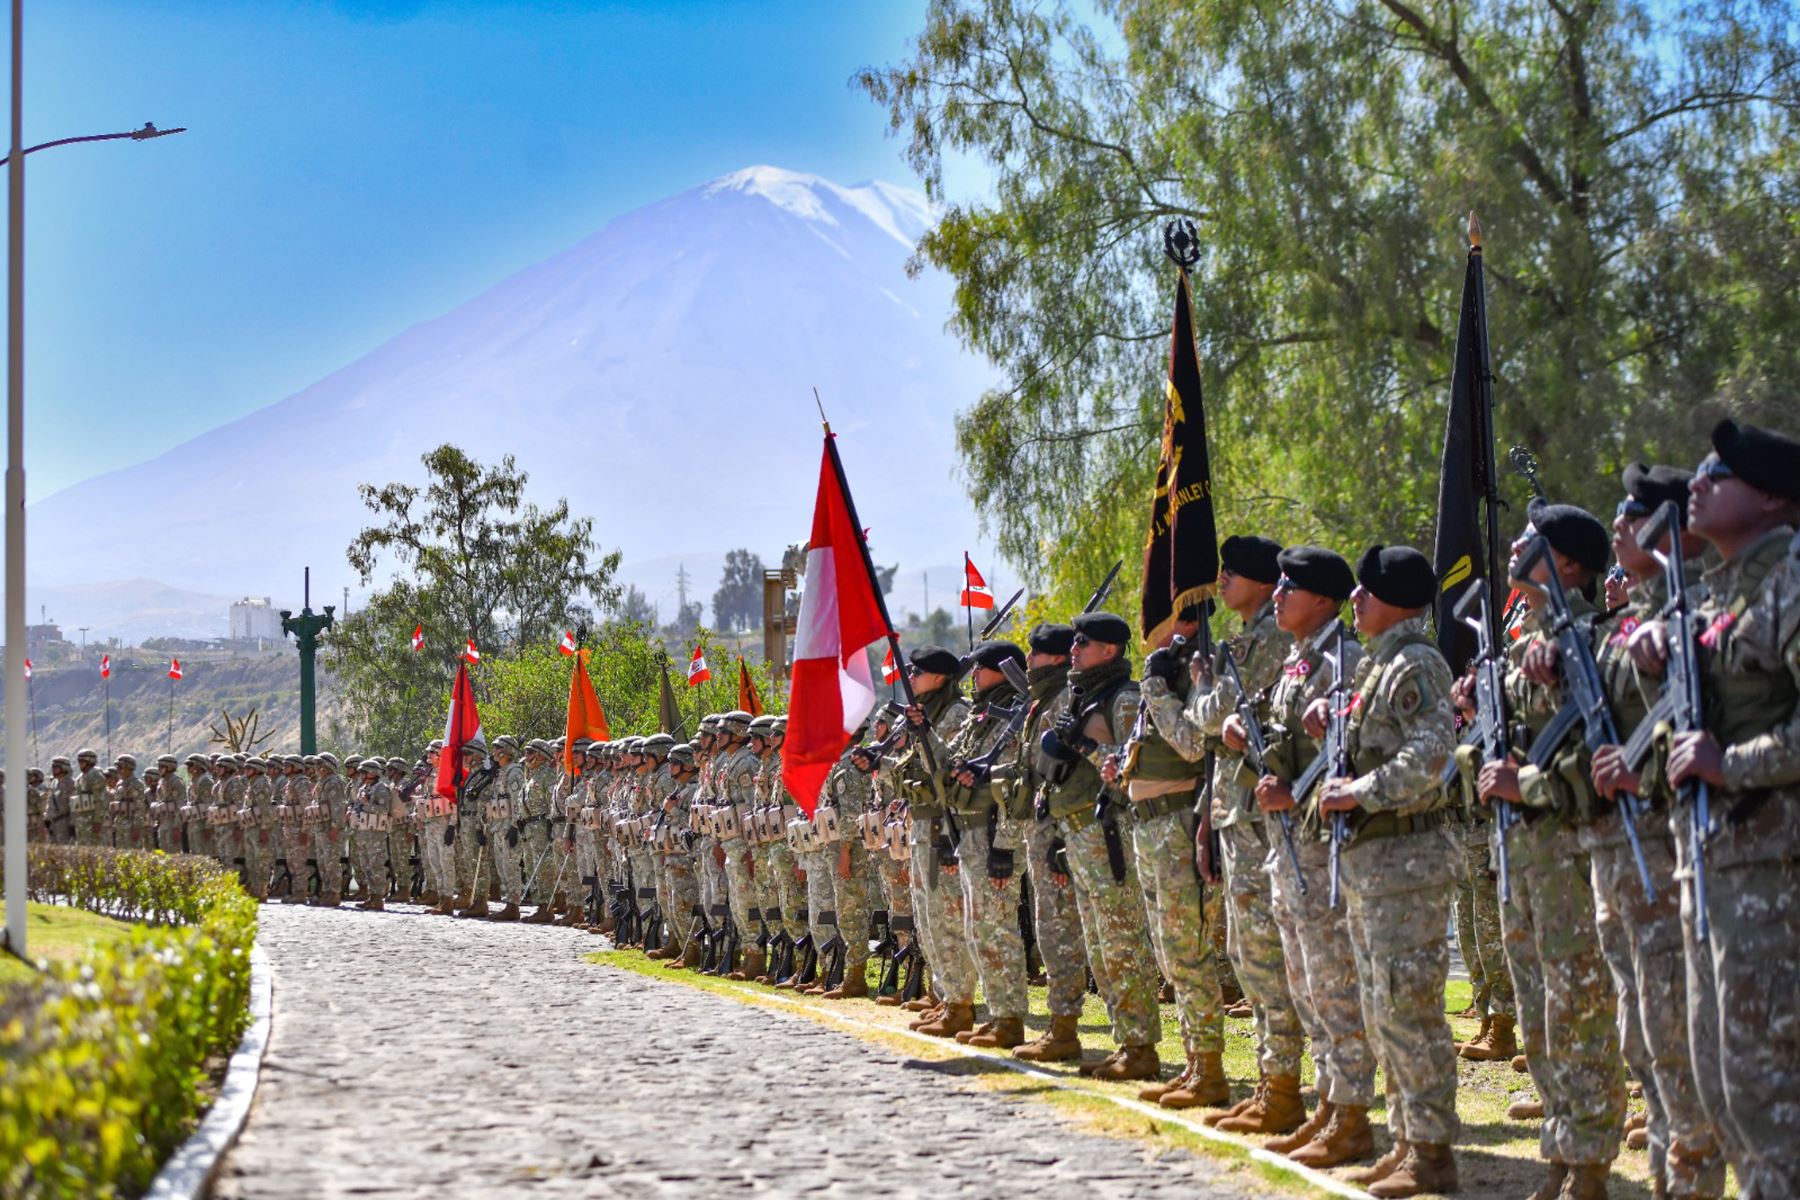 En el distrito de Cayma, en Arequipa se izó la Bandera más grande de la región, al conmemorarse el Centésimo Cuadragésimo Tercer Aniversario de la Batalla de Arica y Día de la Bandera.
Foto: Cortesía Diego Ramos